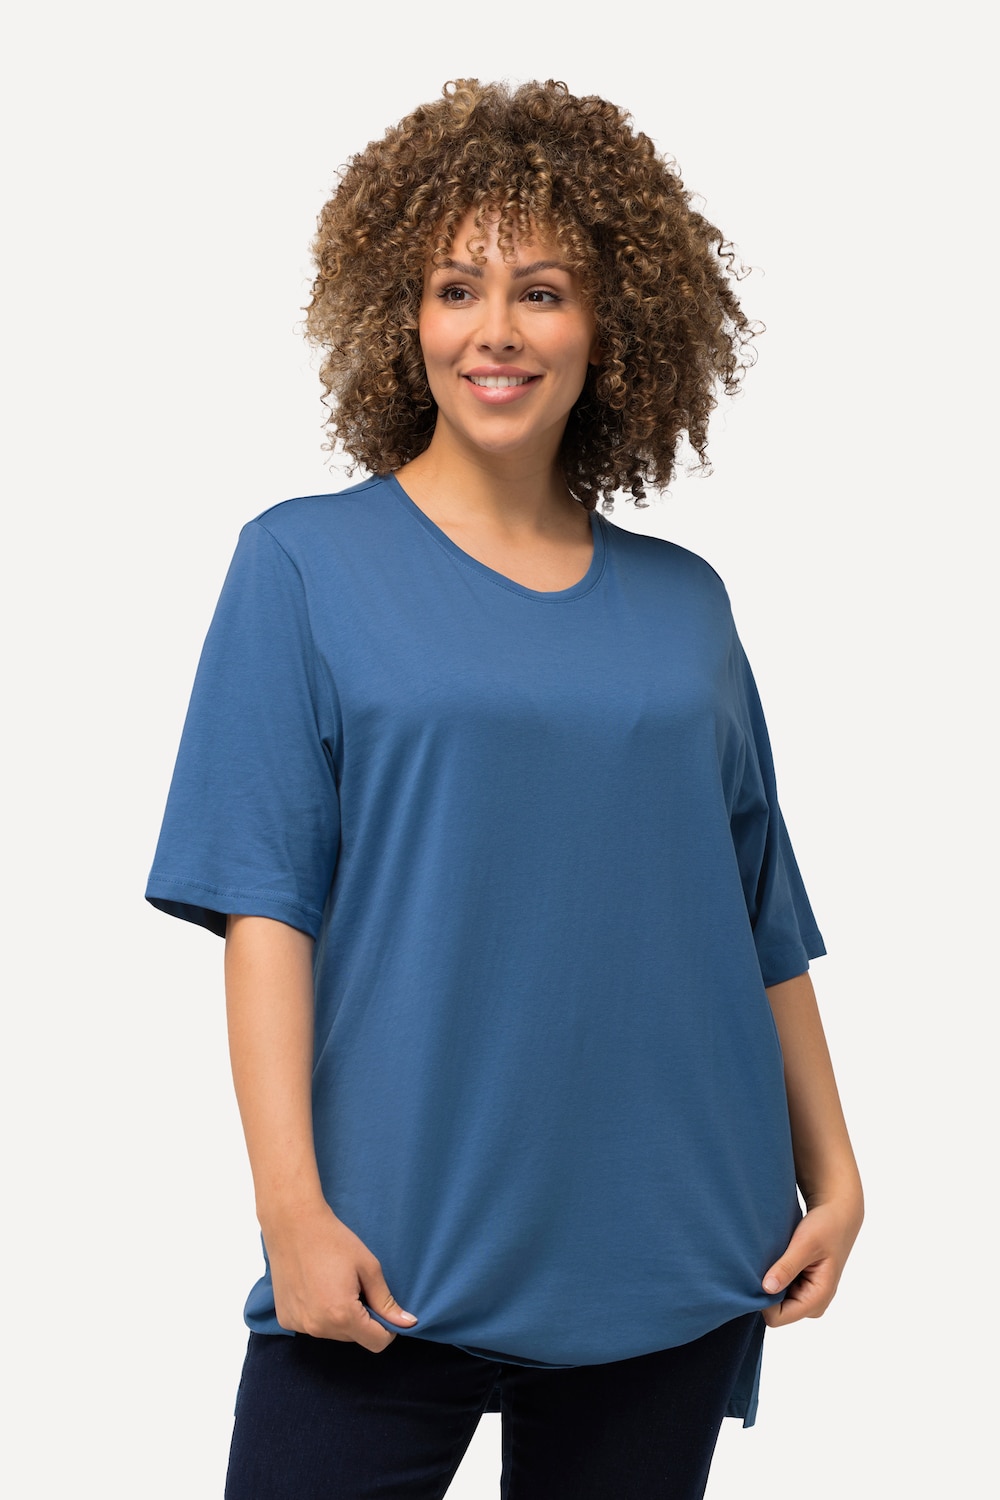 Grote Maten T-shirt, Dames, blauw, Maat: 58/60, Ulla Popken